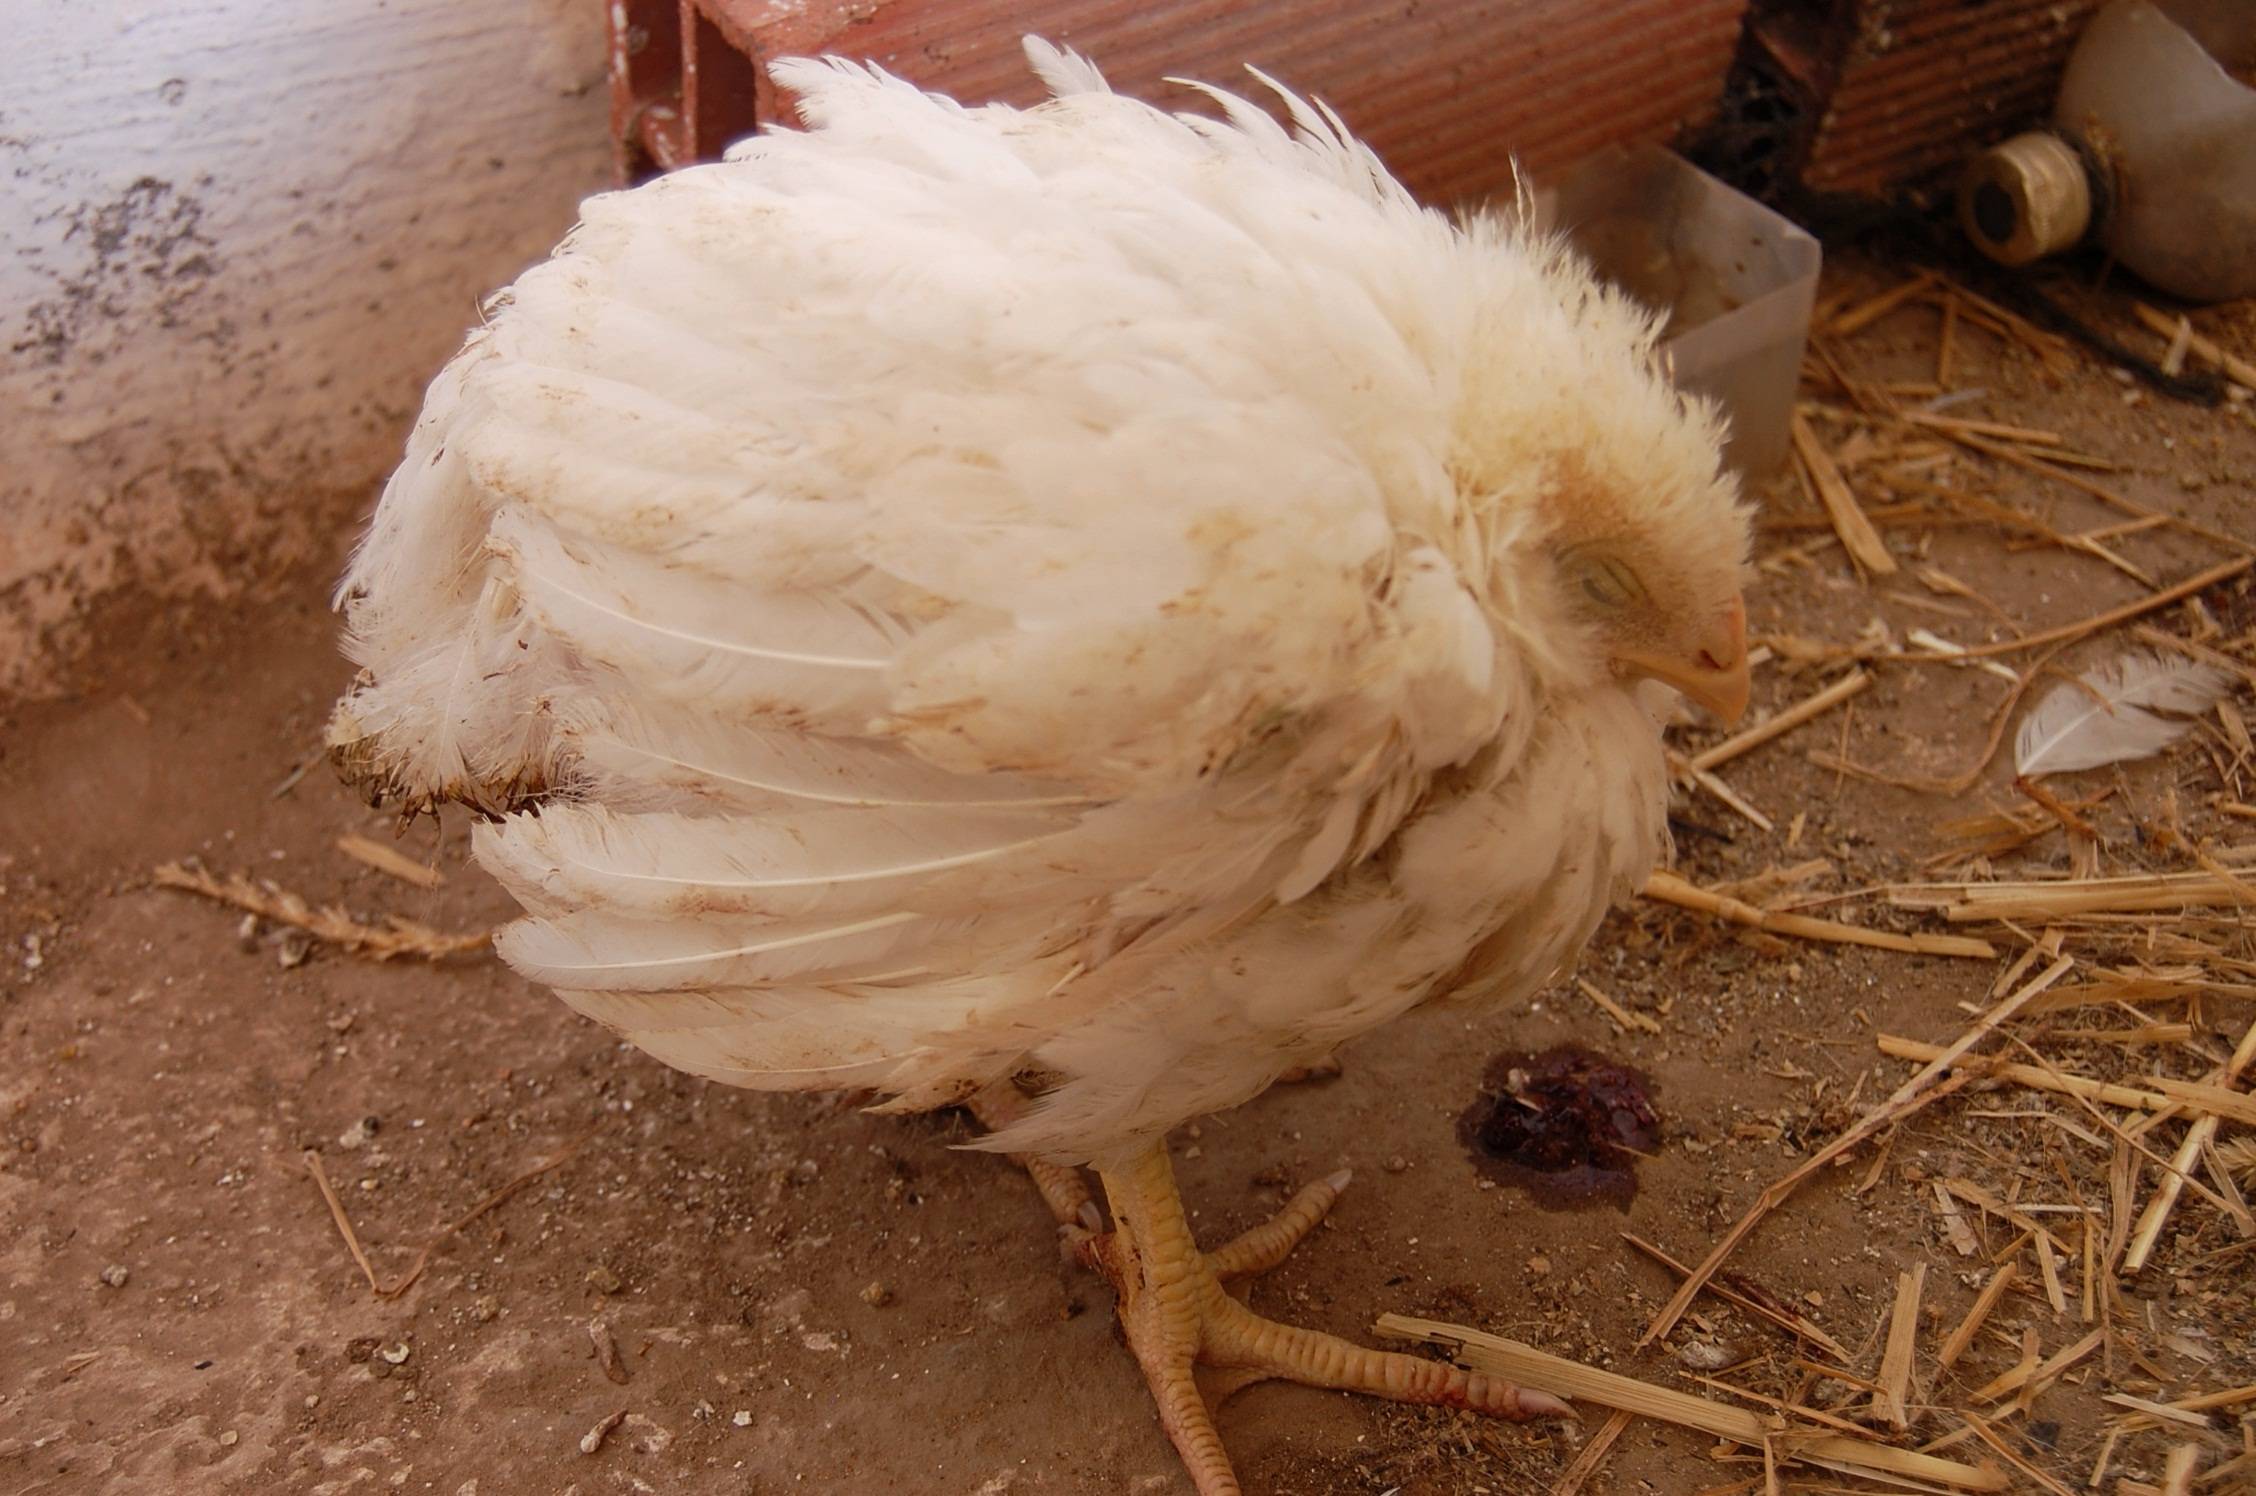 Болезни цыплят в возрасте от 1 до 60 дней и лечение